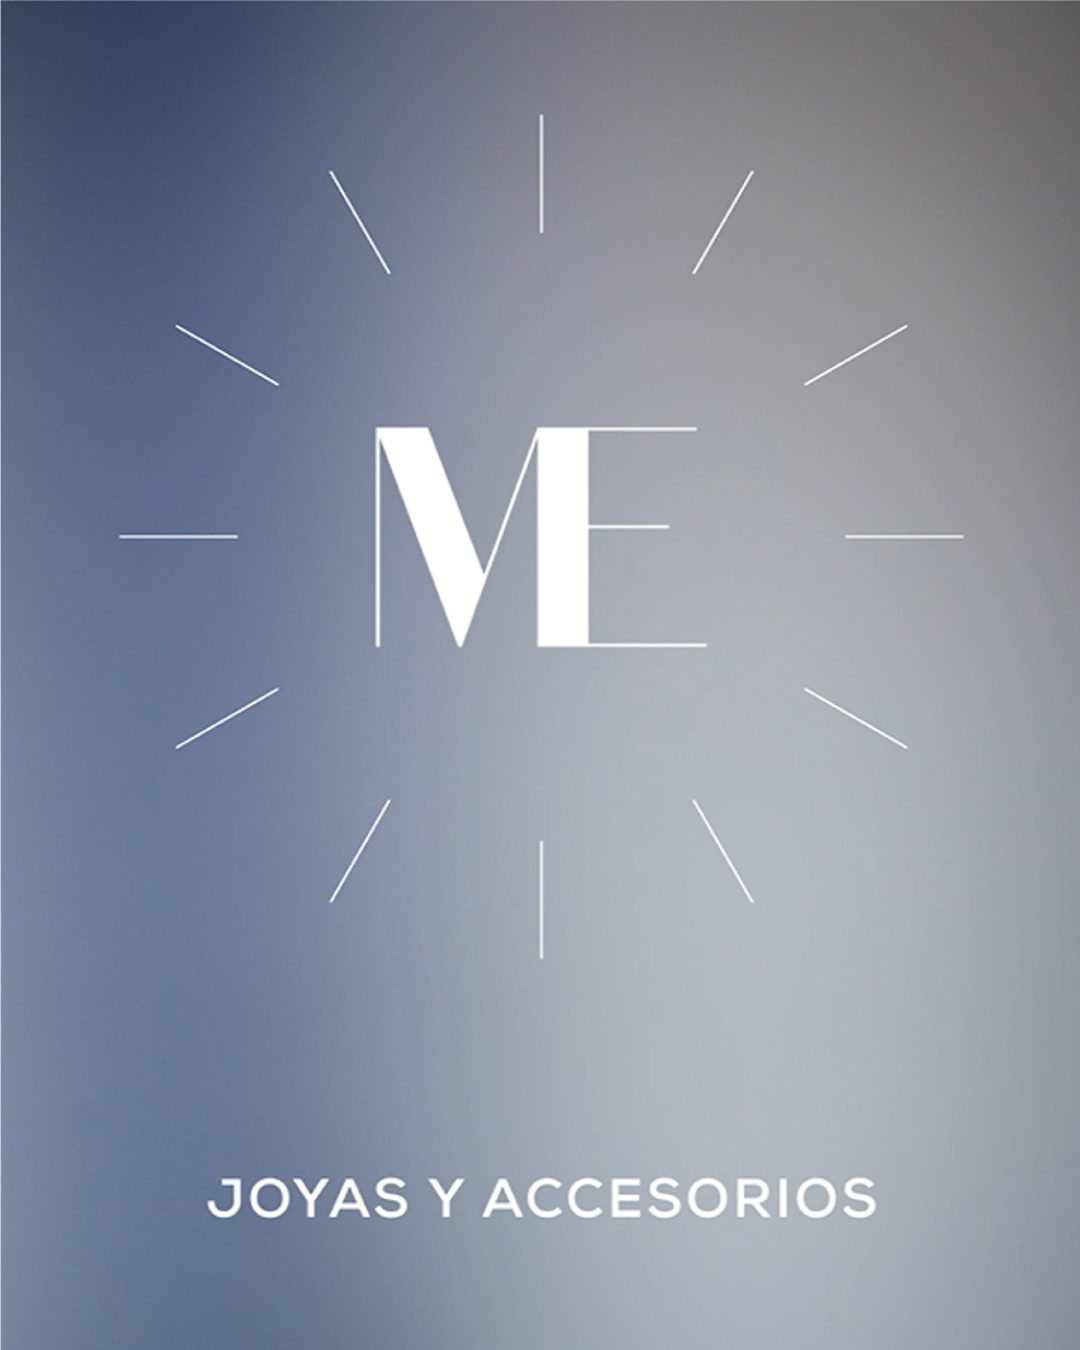 Me Joyas y Accesorios - Branding Por IluminareStudio